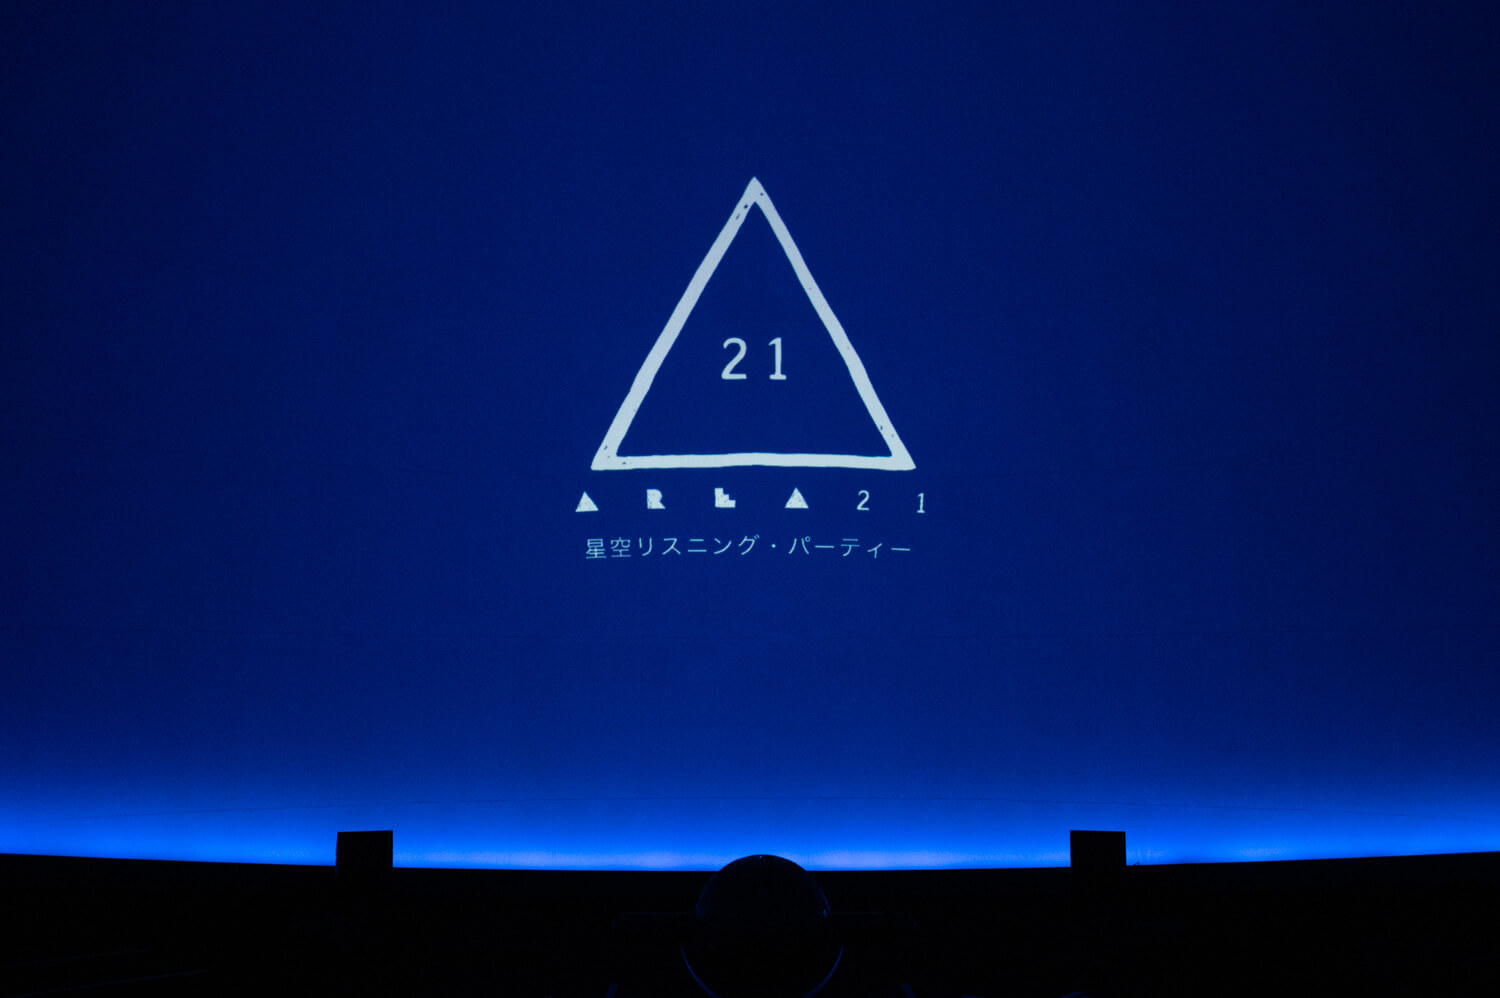 【イベント・レポート】AREA21のデビュー・アルバム発売記念リスニング・パーティー＠コニカミノルタプラネタリウム天空、大爆音と圧巻の特別映像と共に終了！アーティスト本人による特別コメントも上映